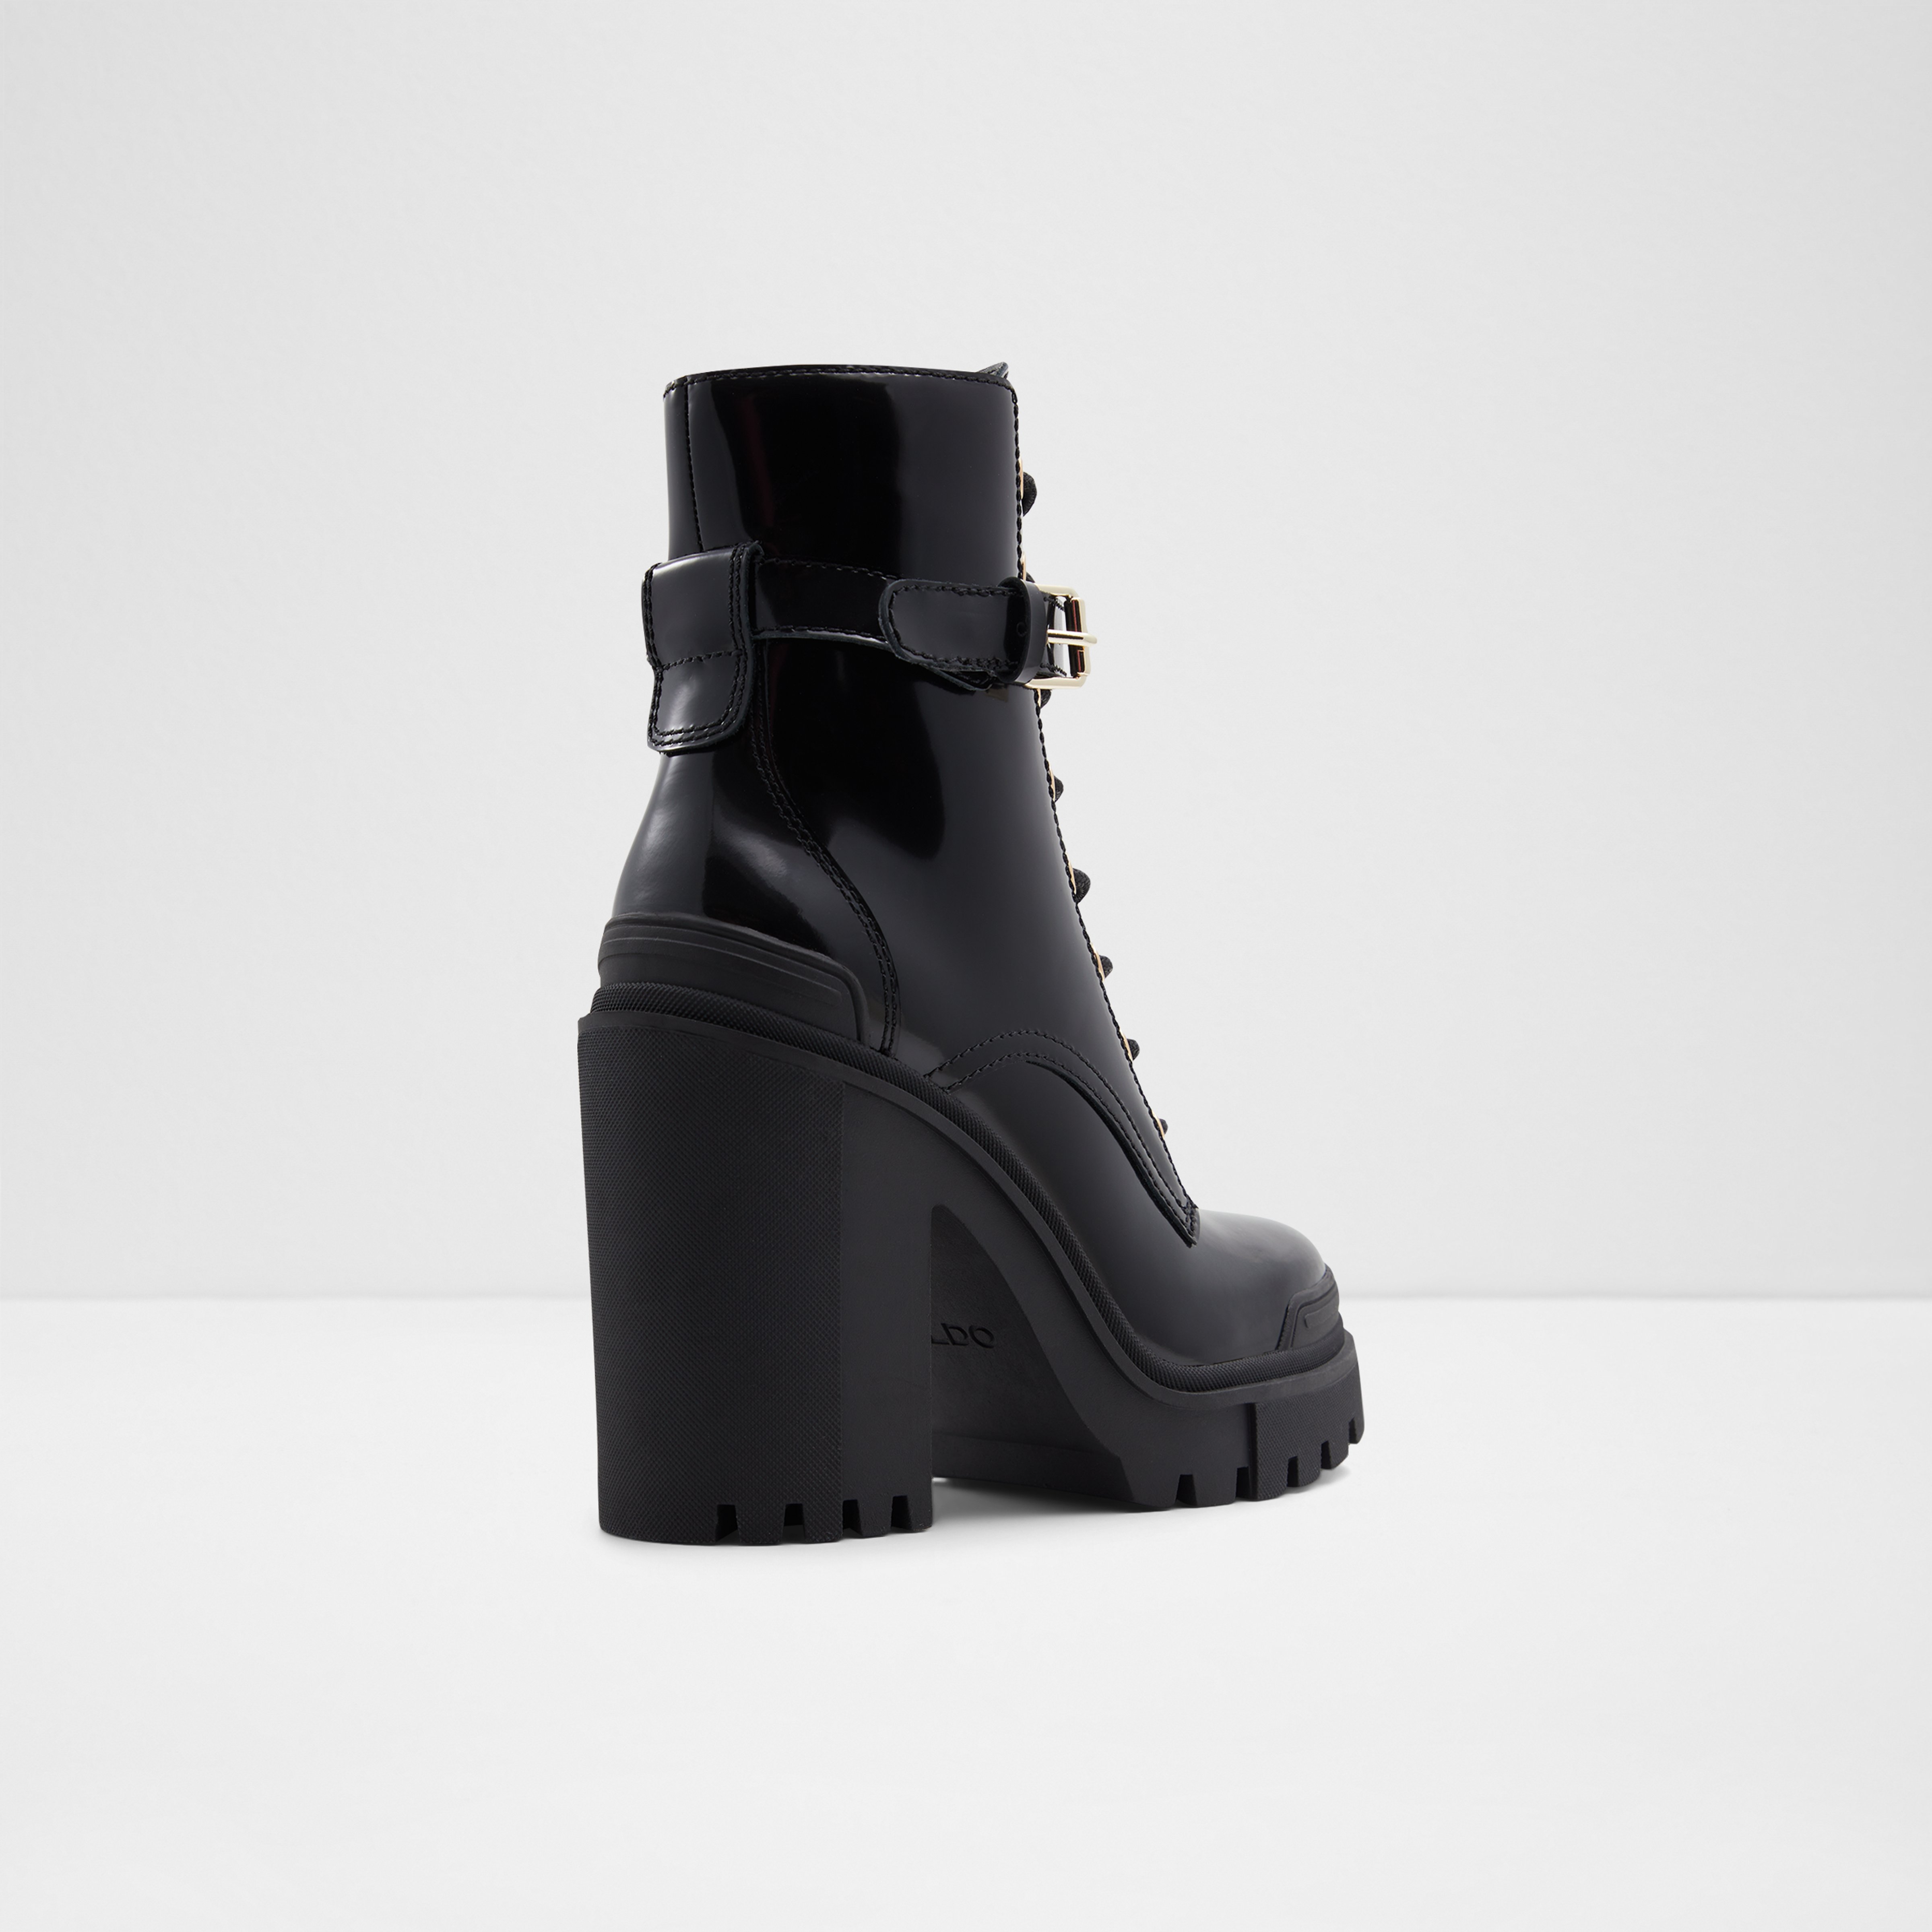 Uplift Black Leather Shiny Women's Lace-Up Boots | ALDO US